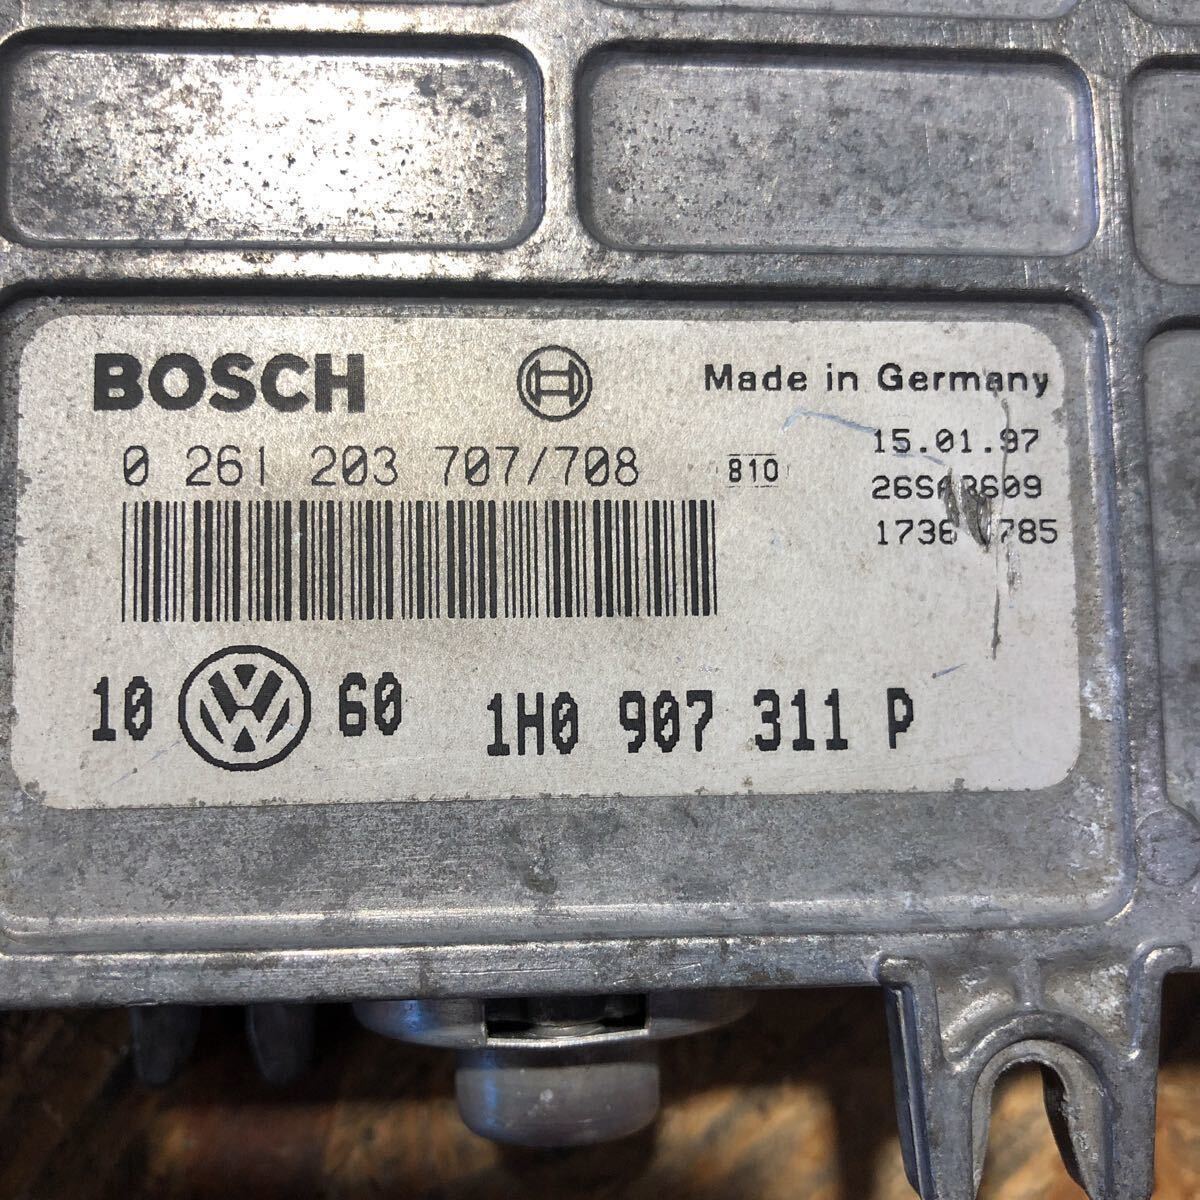 VW Golf III кабриолет Vent двигатель блок управления Bosch0-261-203-707 / 708 VW 1H0-907-311P